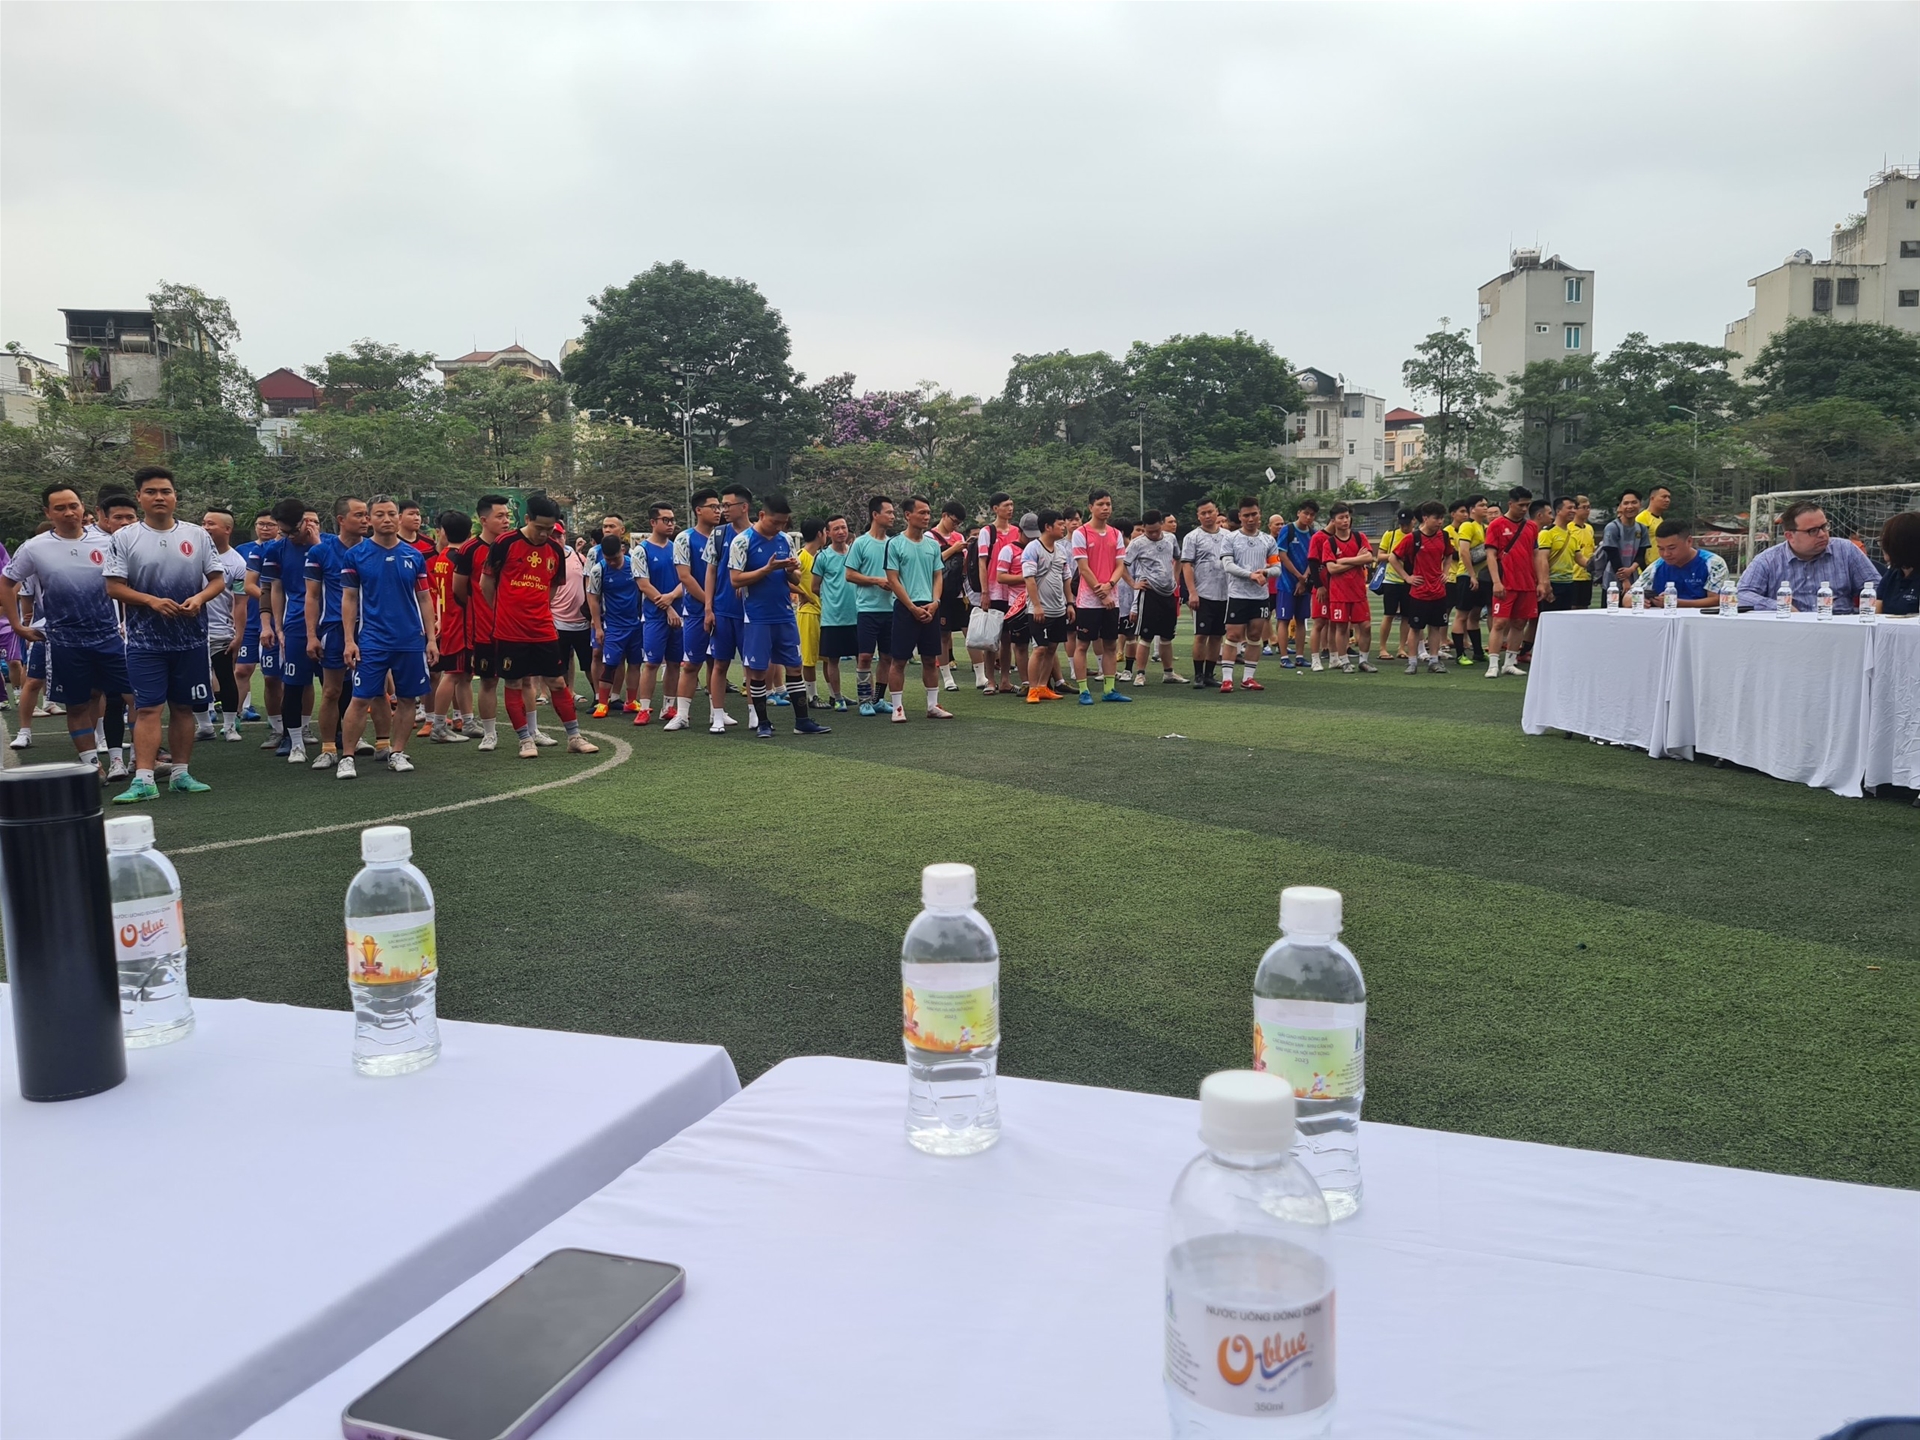 Nước uống O-blue - nhà tài trợ cho giải đấu giao hữu bóng đá “Các khách sạn- khu căn hộ khu vực Hà Nội mở rộng”.